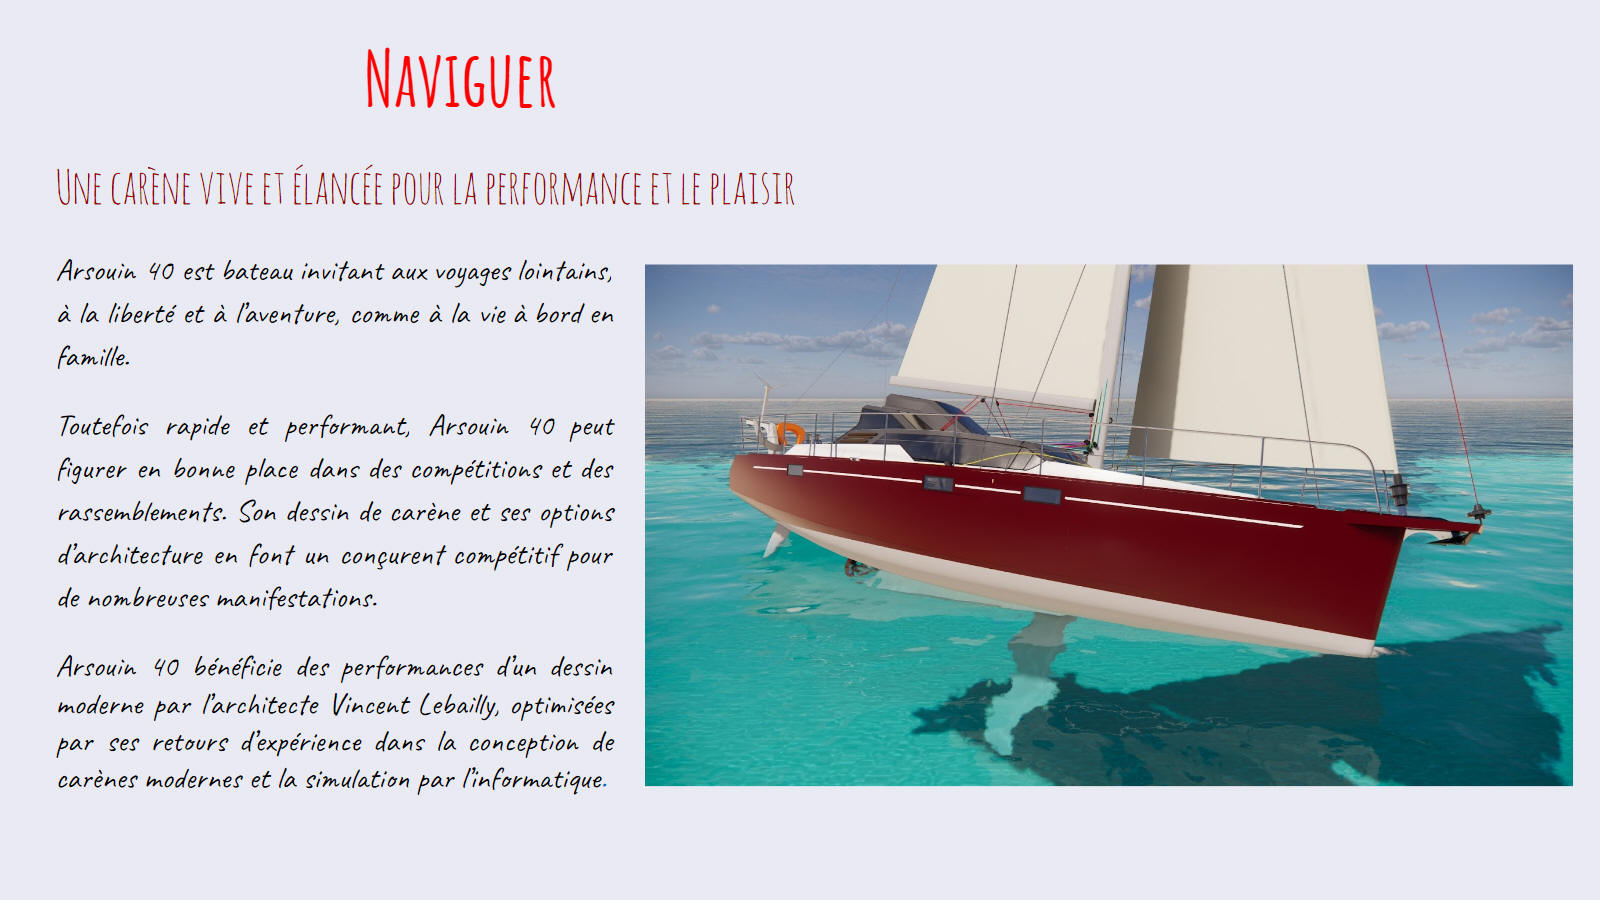 Naviguer avec un voilier voyage hybride-électrique - dériveur intégral. Une carène vive et élancée pour la performance et le plaisir.